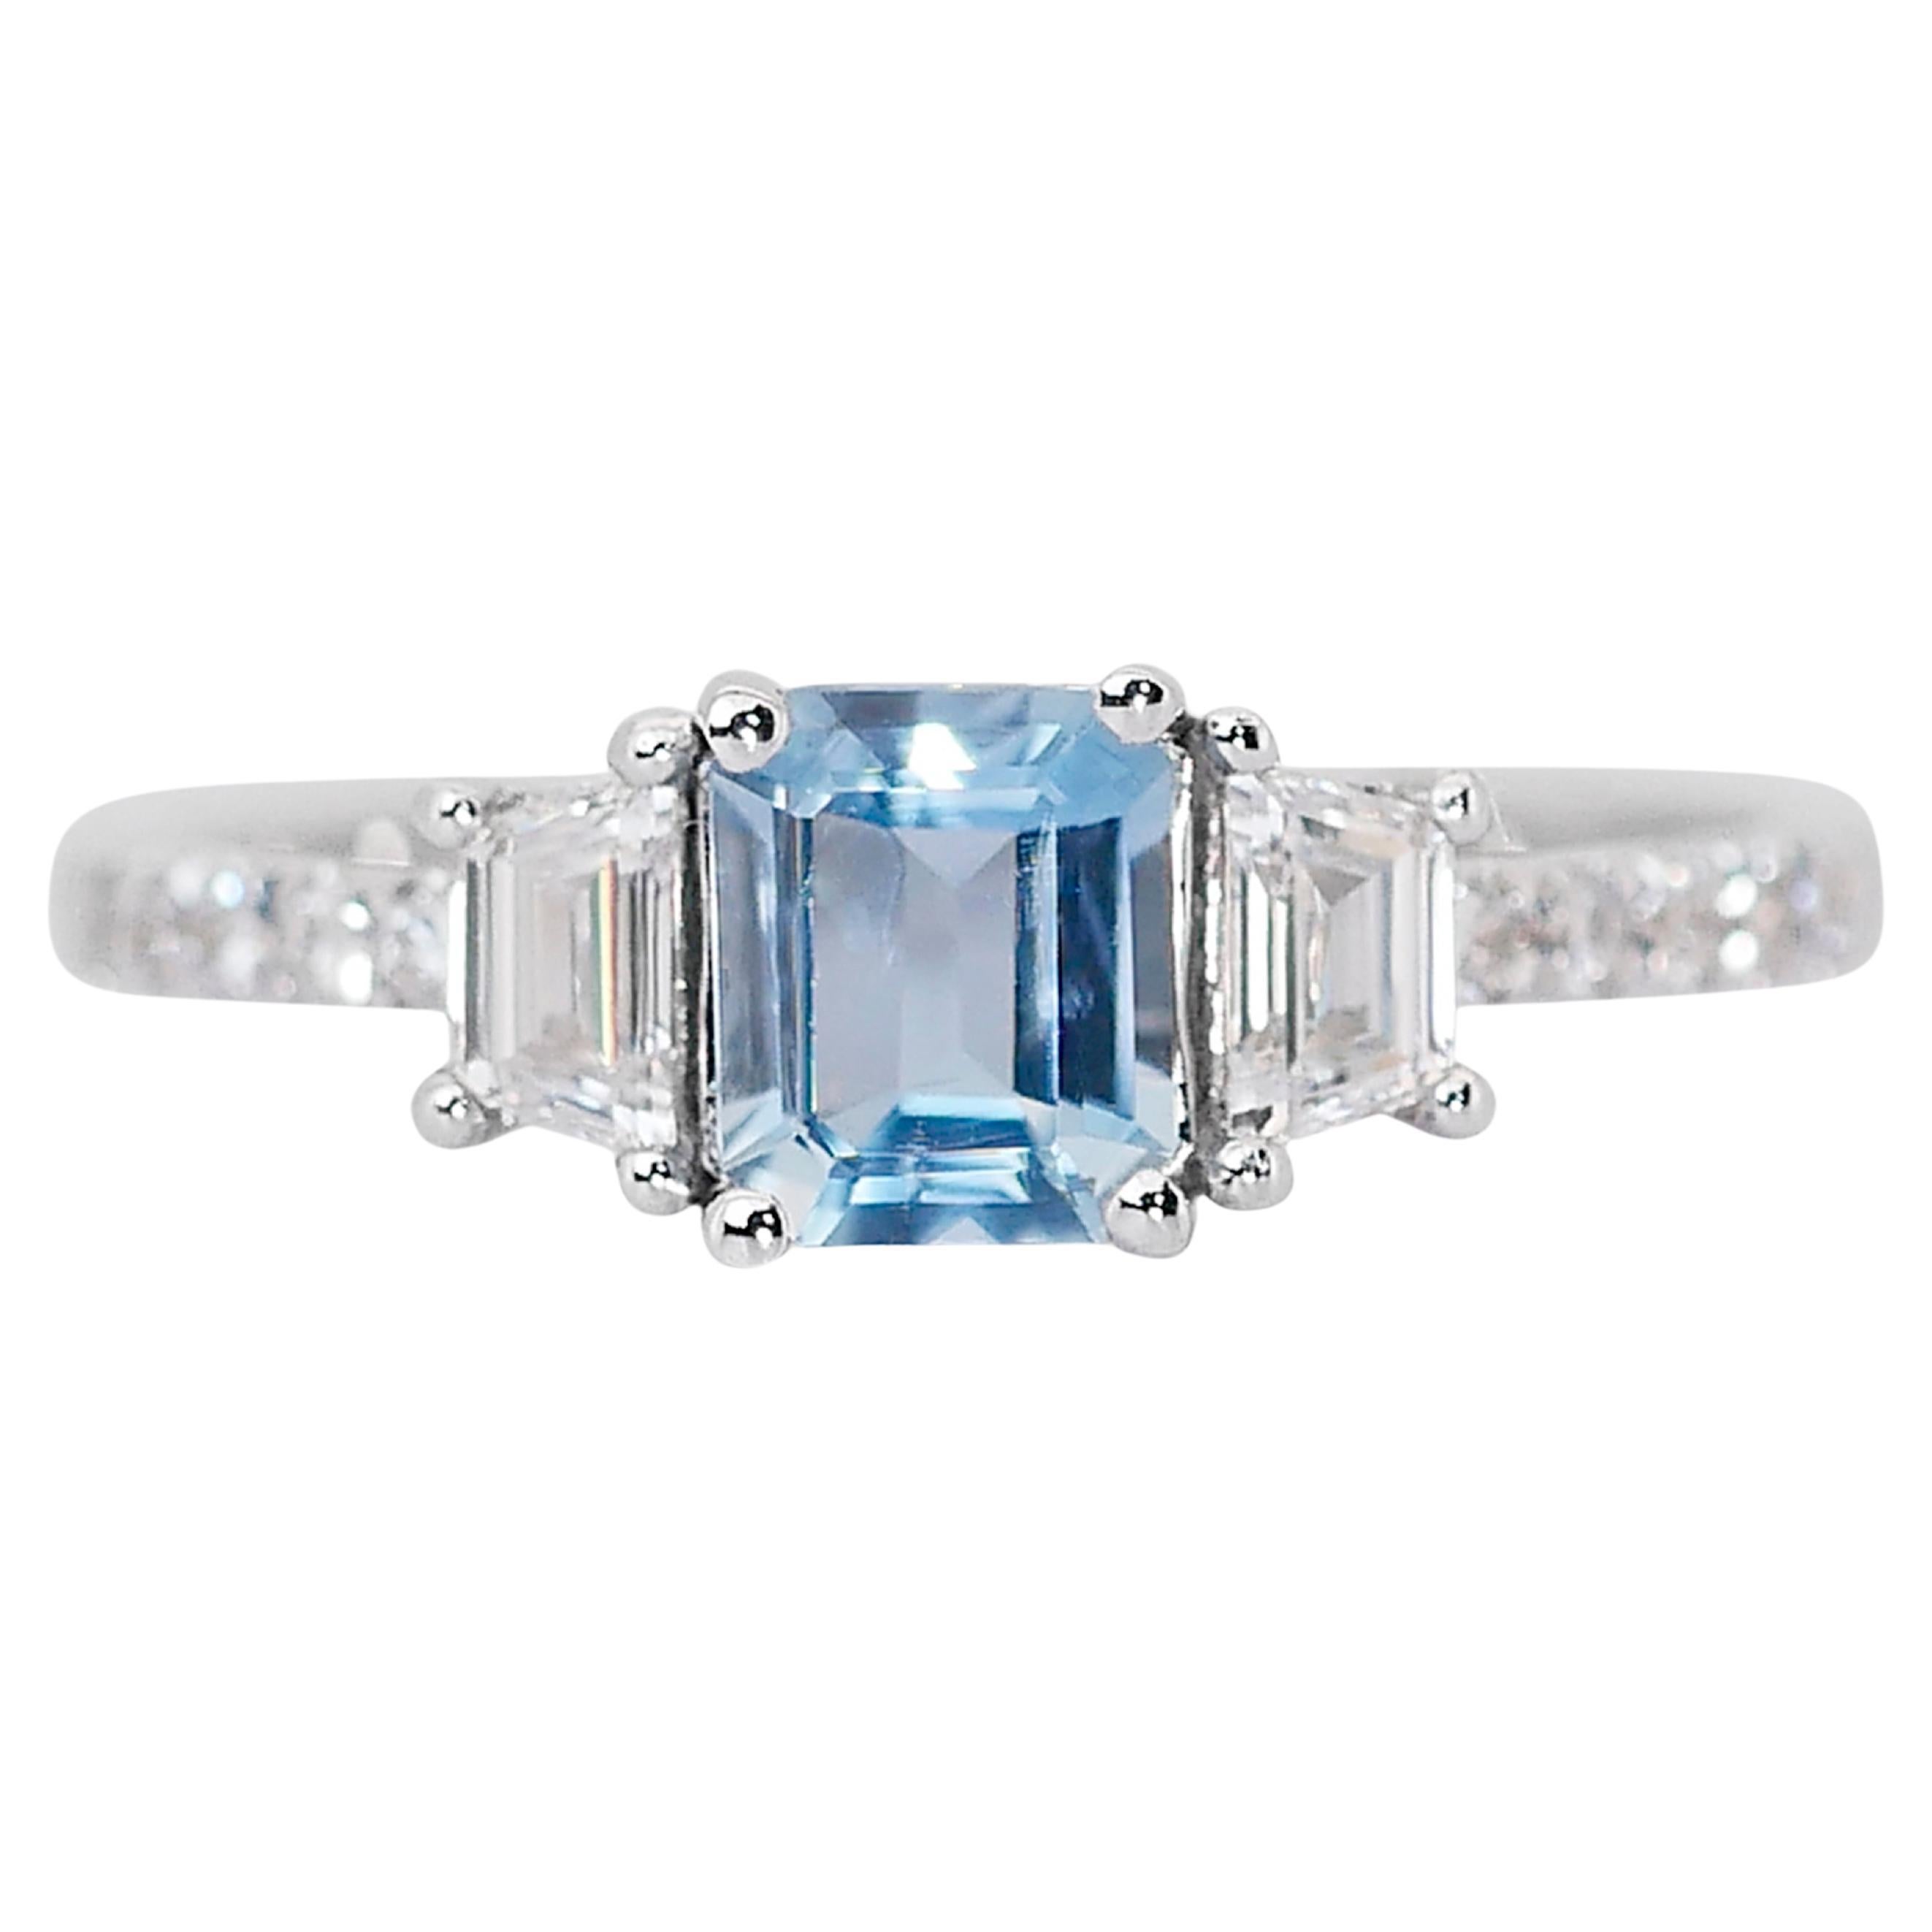 Elegant 1.28ct Aquamarine and Diamonds 3-Stone Ring in 18k White Gold - IGI Cert For Sale